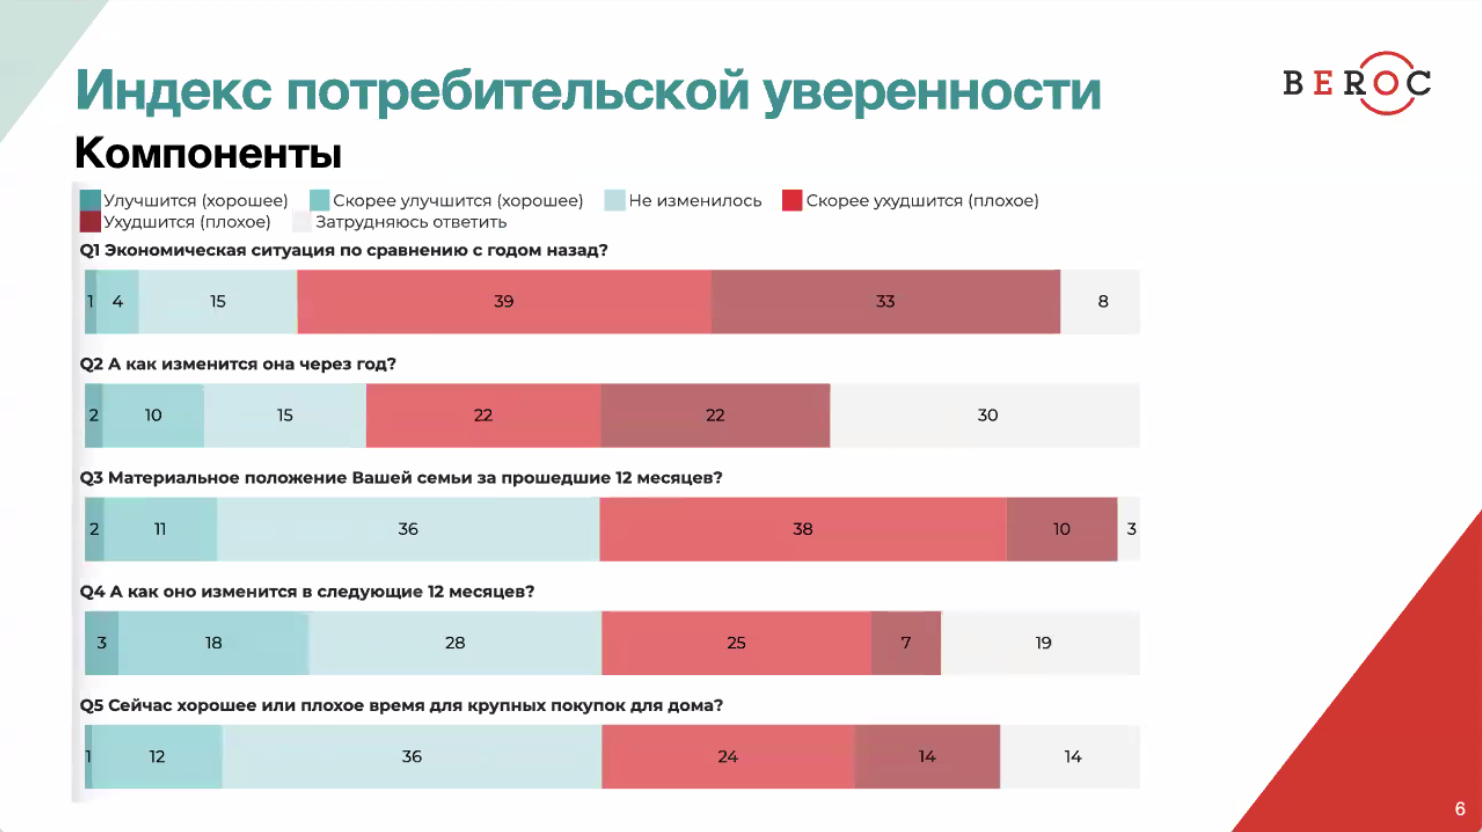 Бедные становятся беднее: белорусы не ждут хорошего в экономике